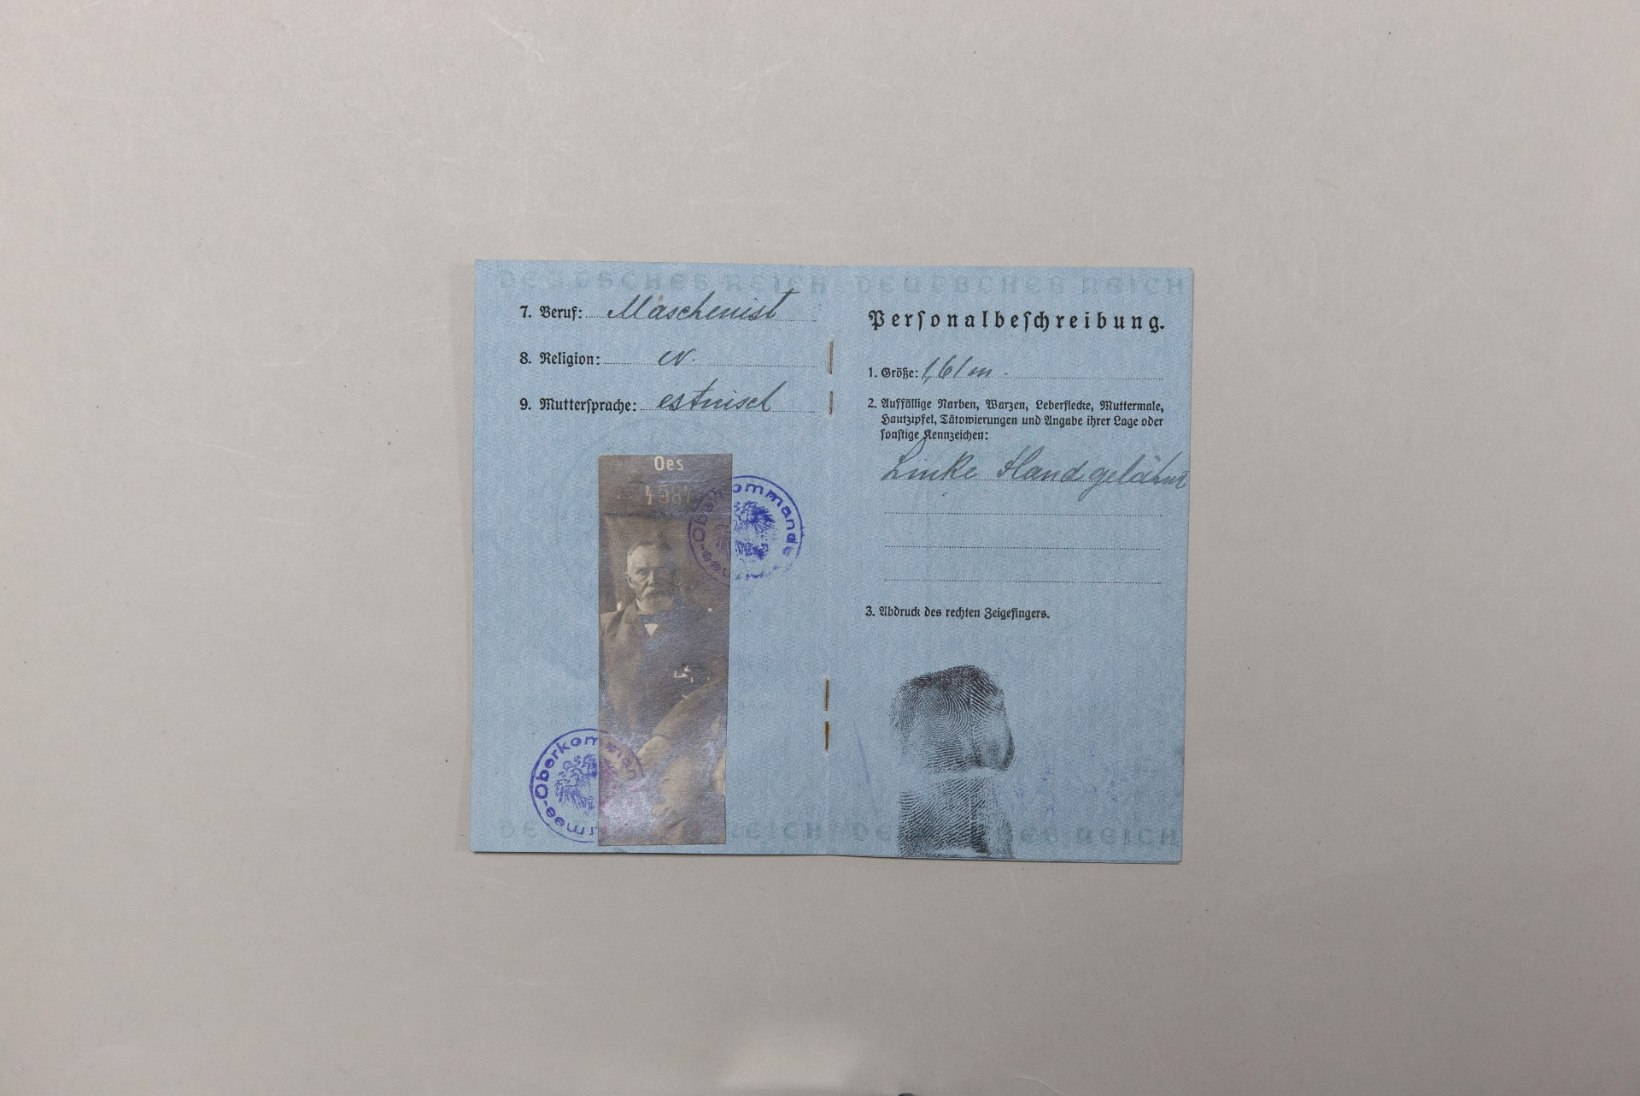 Eestlane ja pass – koos üle 150 aasta